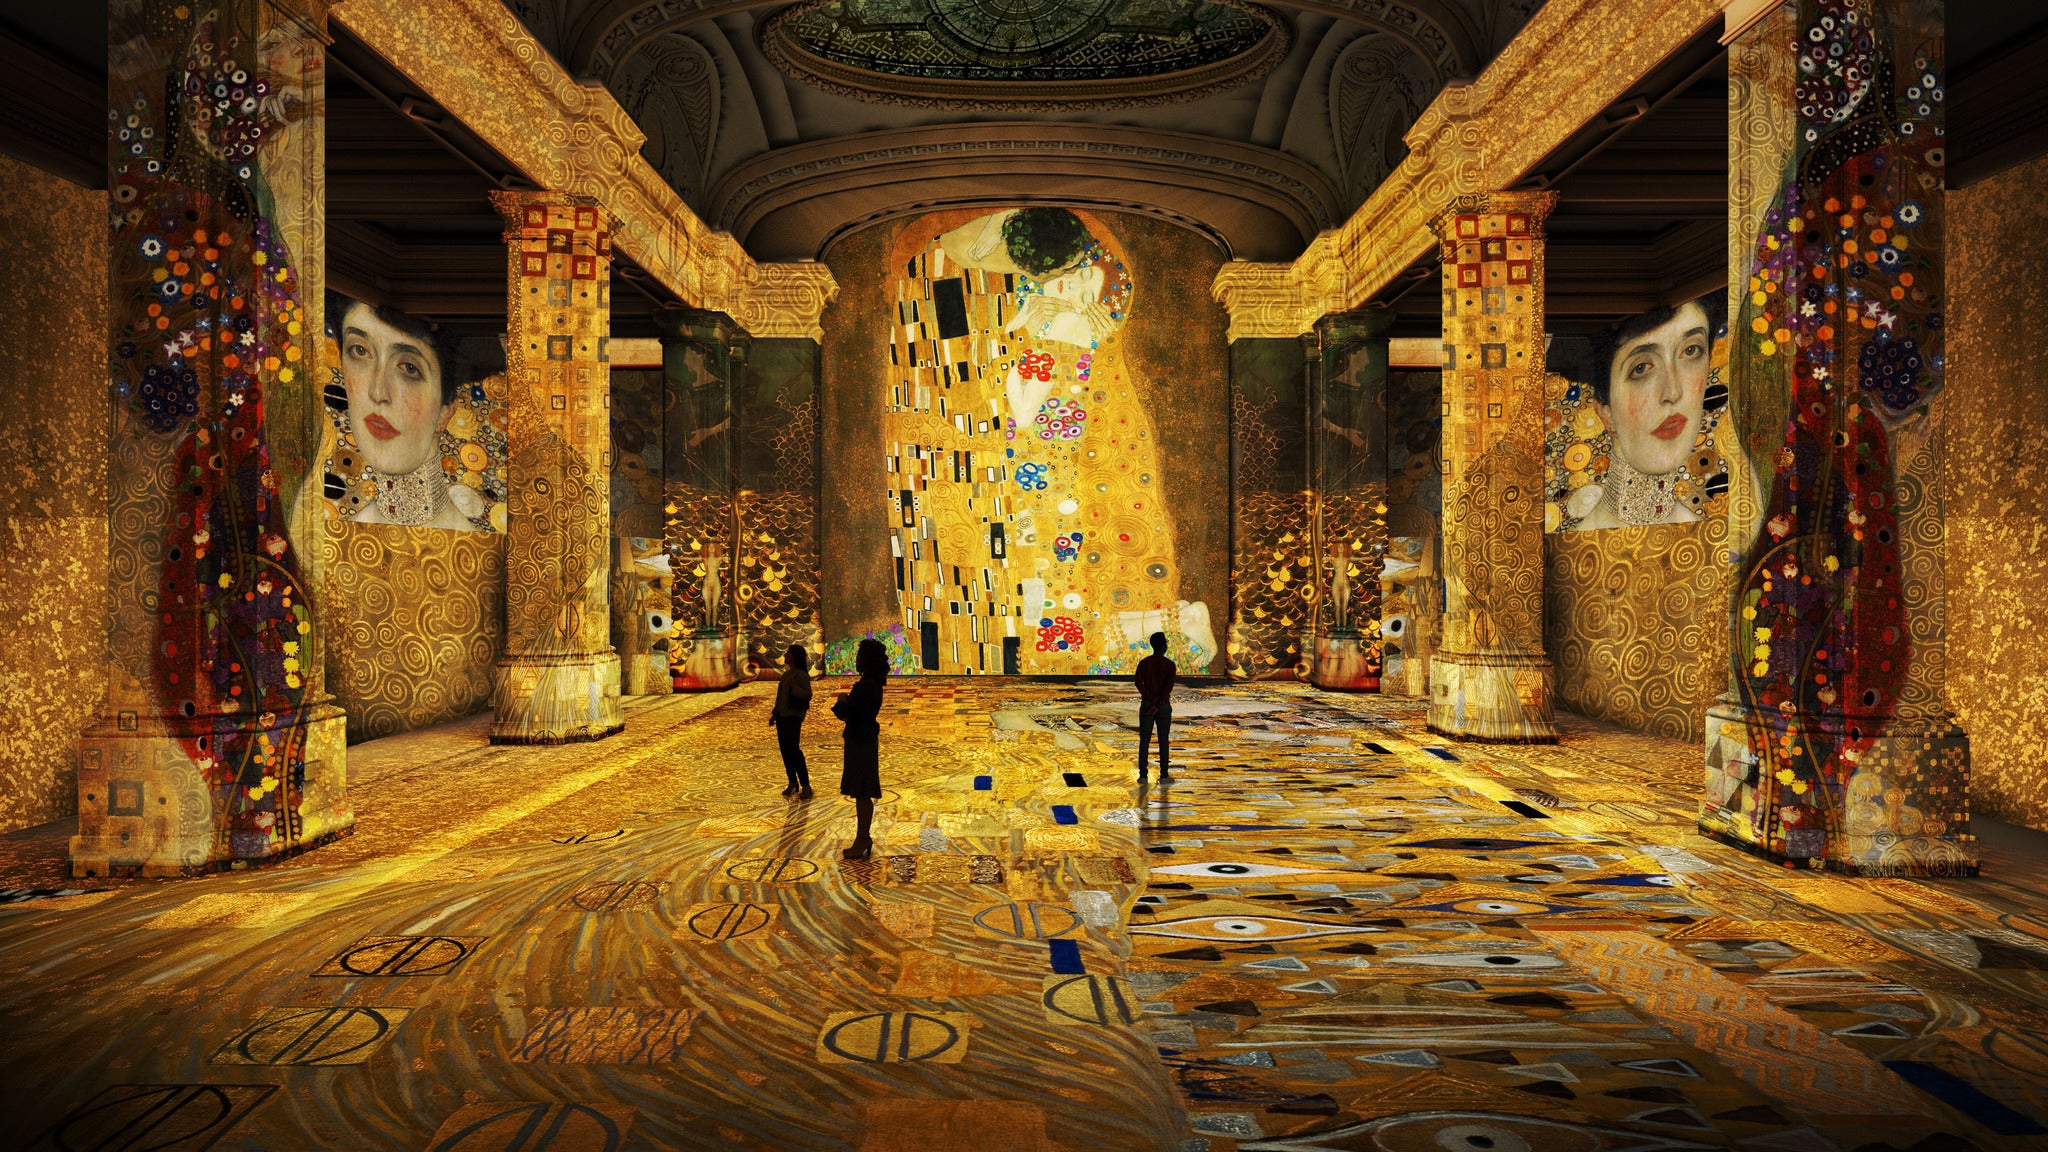 Gustav Klimt: Gold in Motion